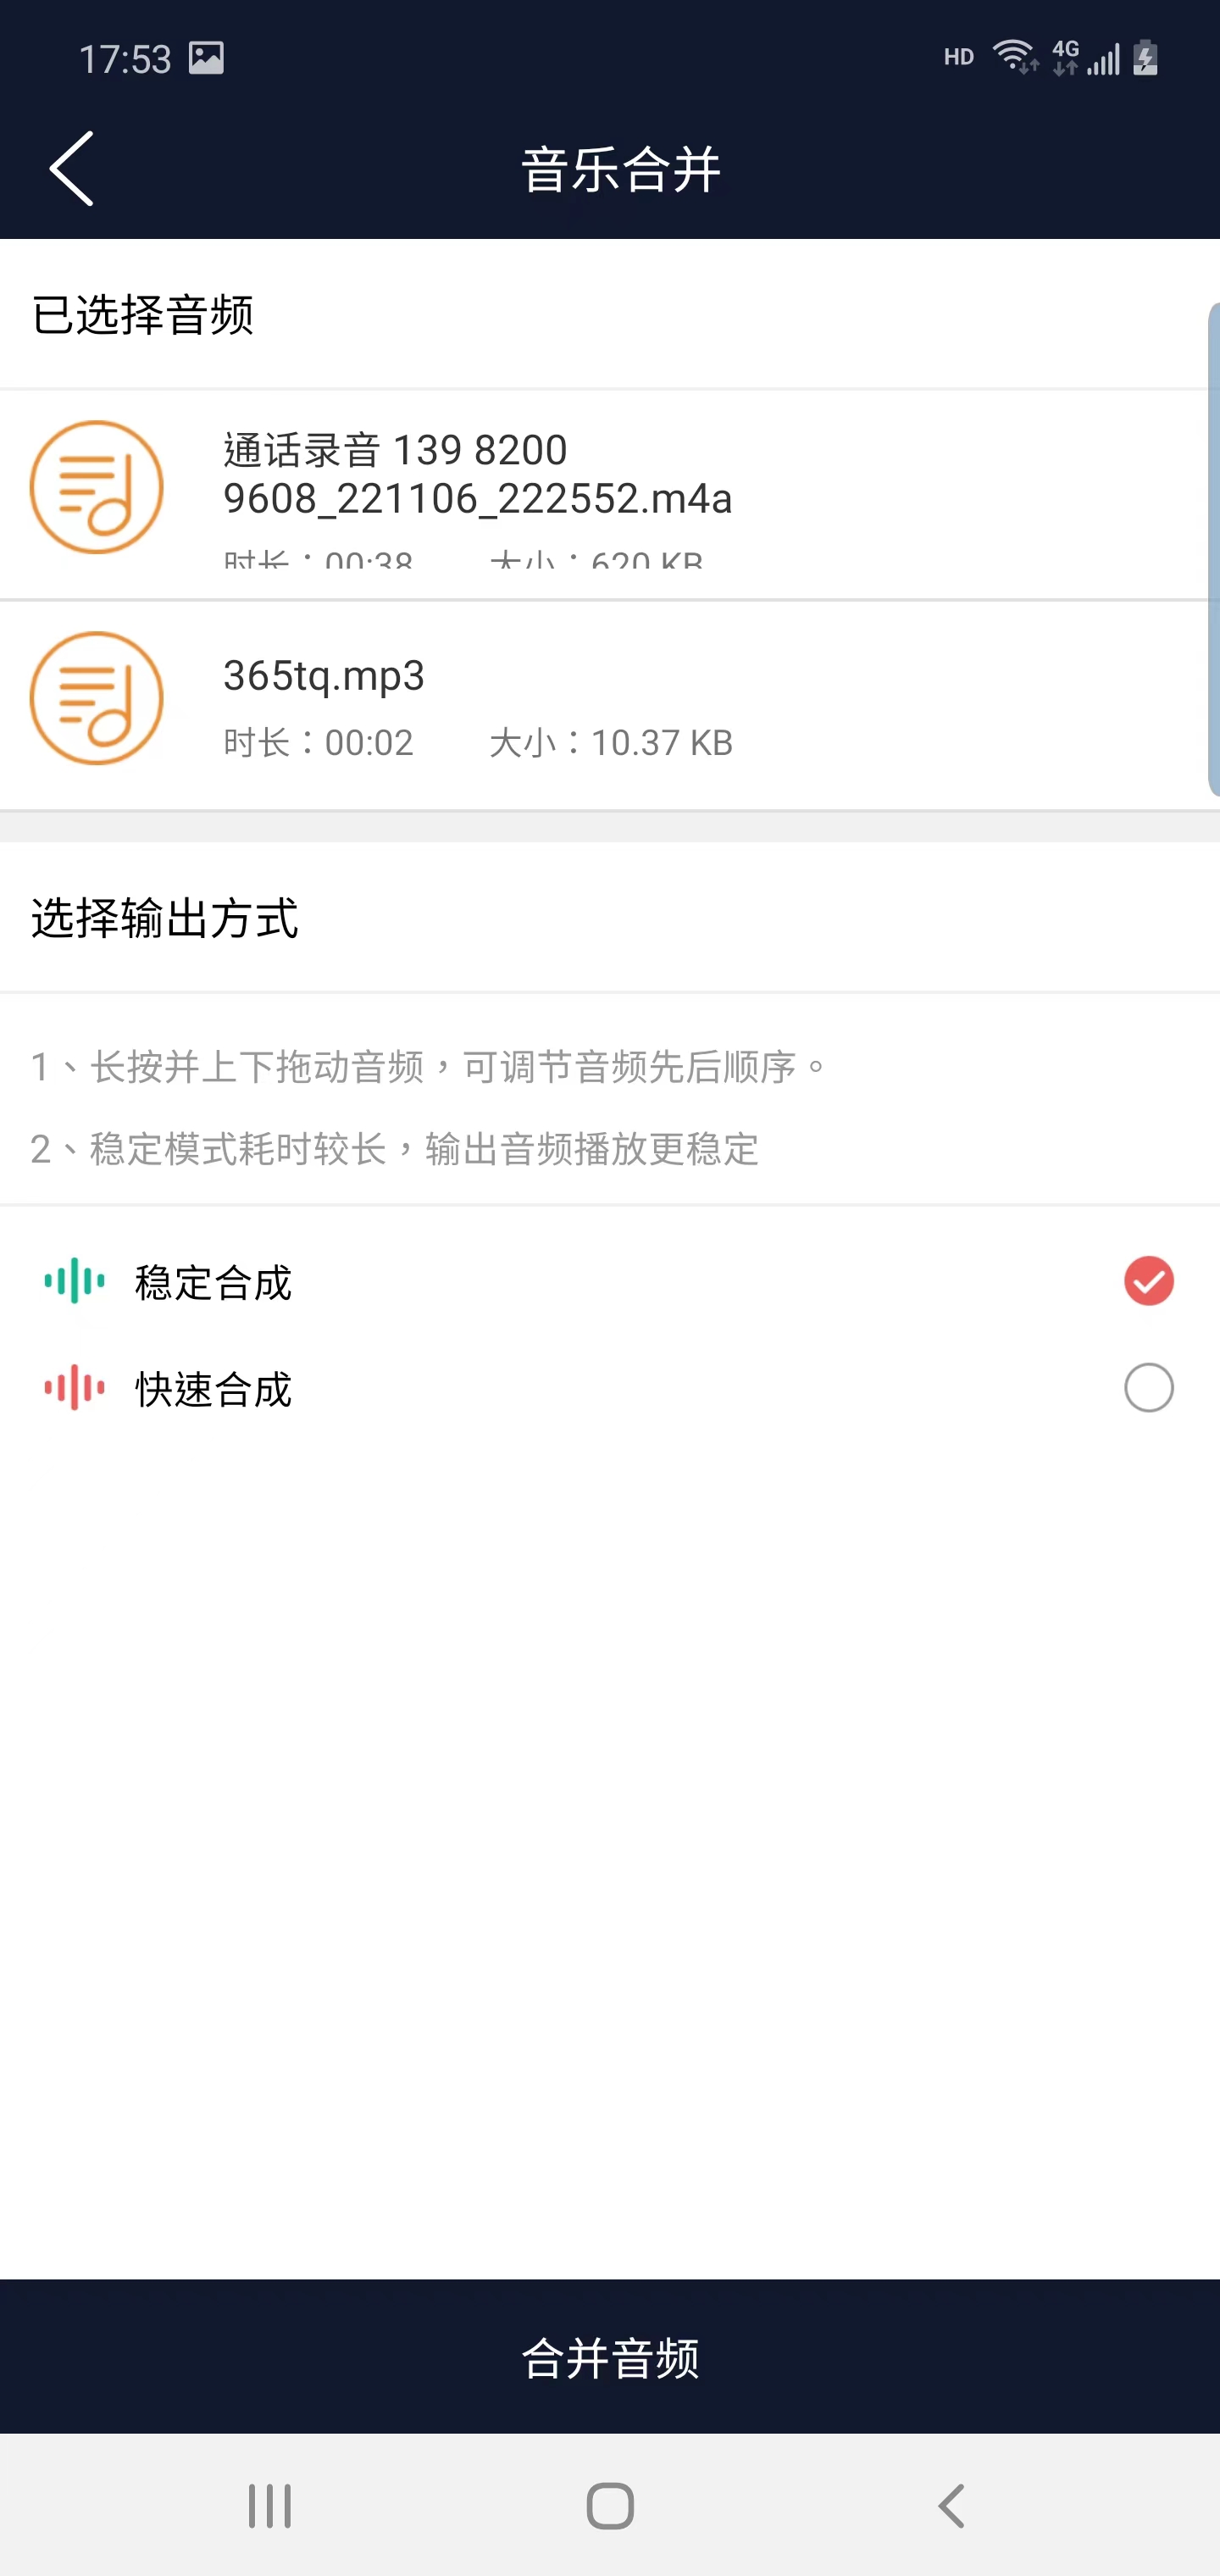 楠月音频编辑app下载,楠月音频编辑app官方版 v1.0